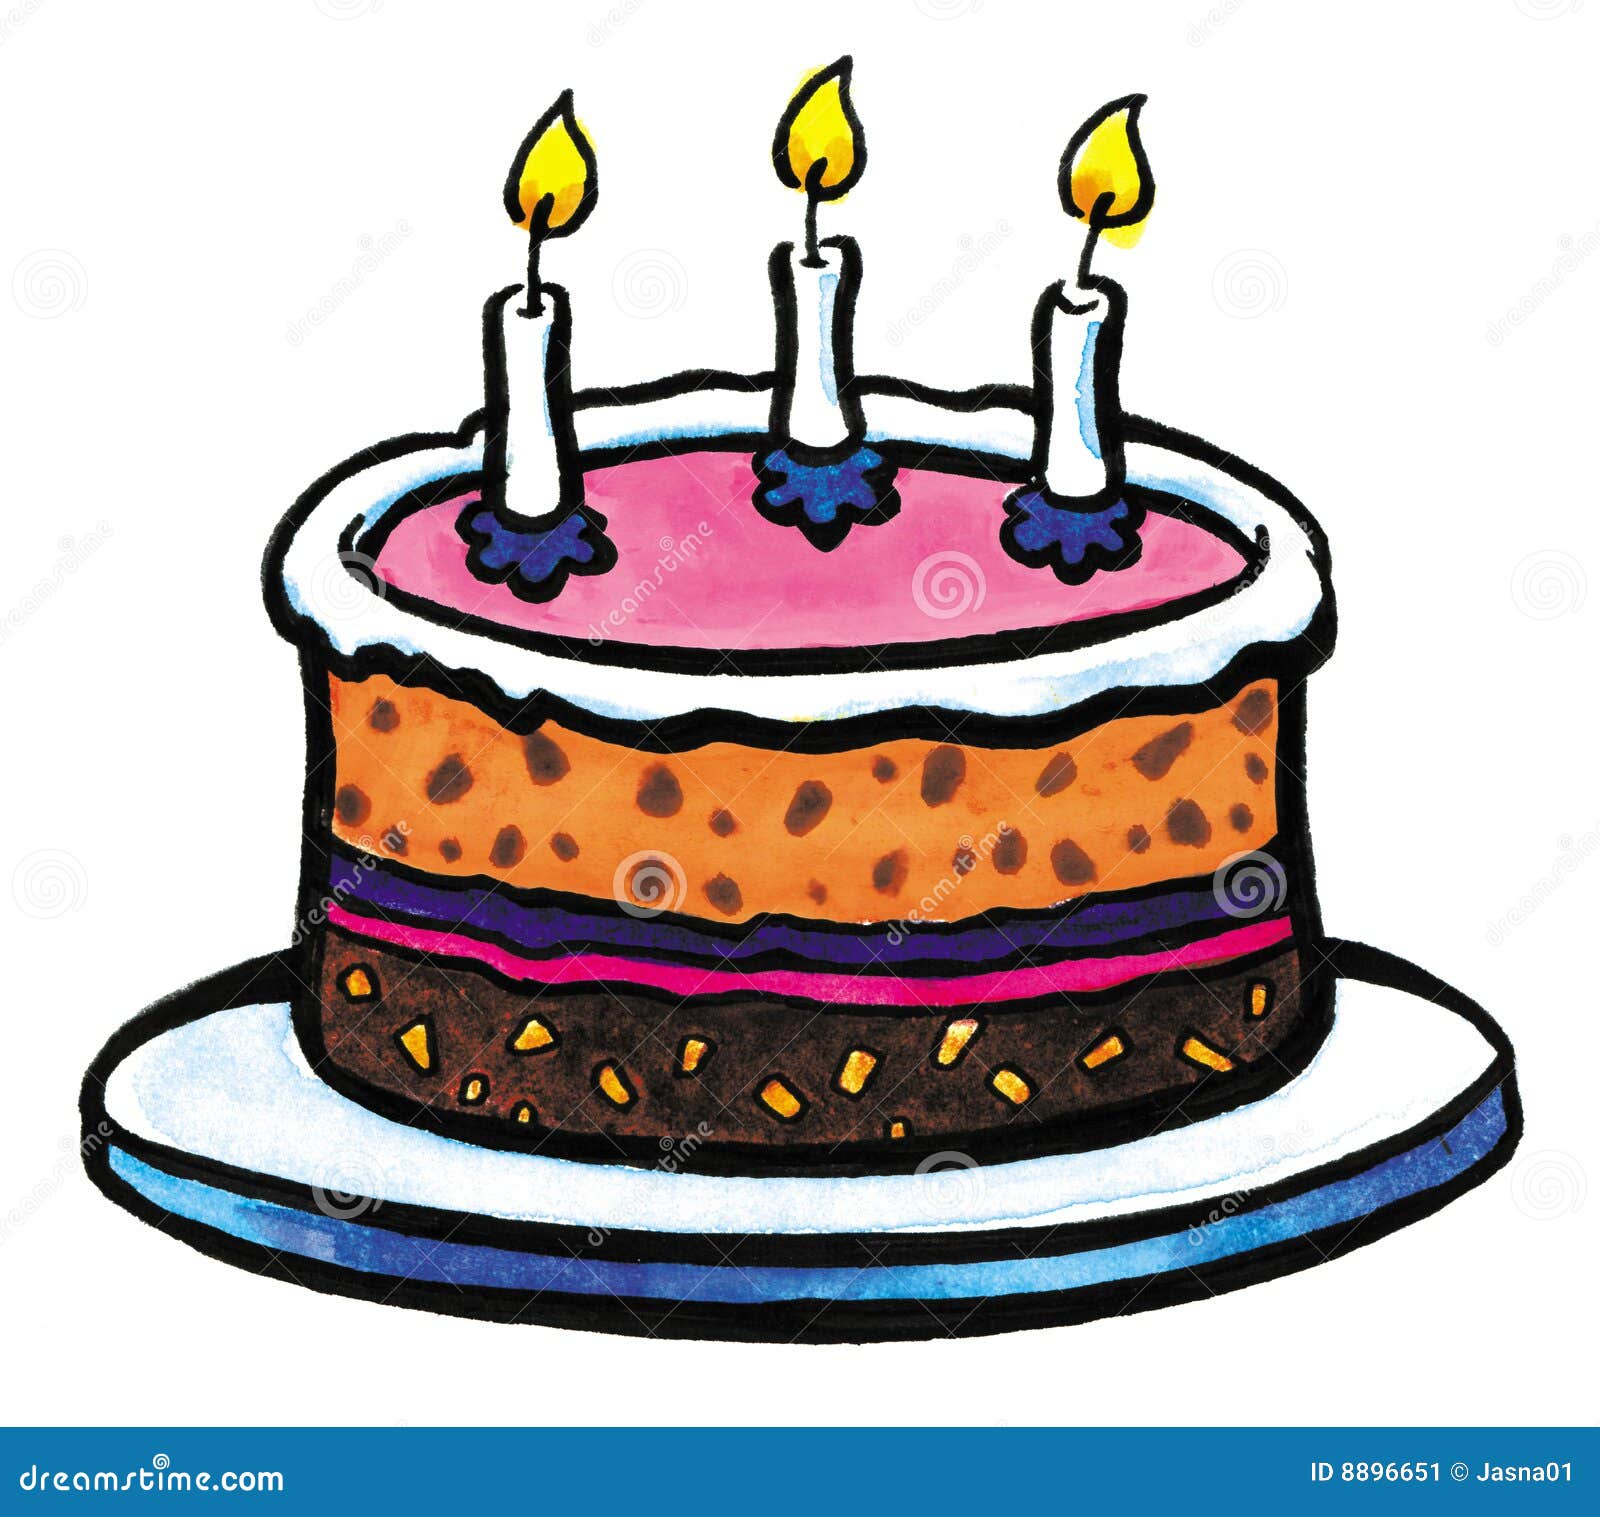 clipart tort urodzinowy - photo #7